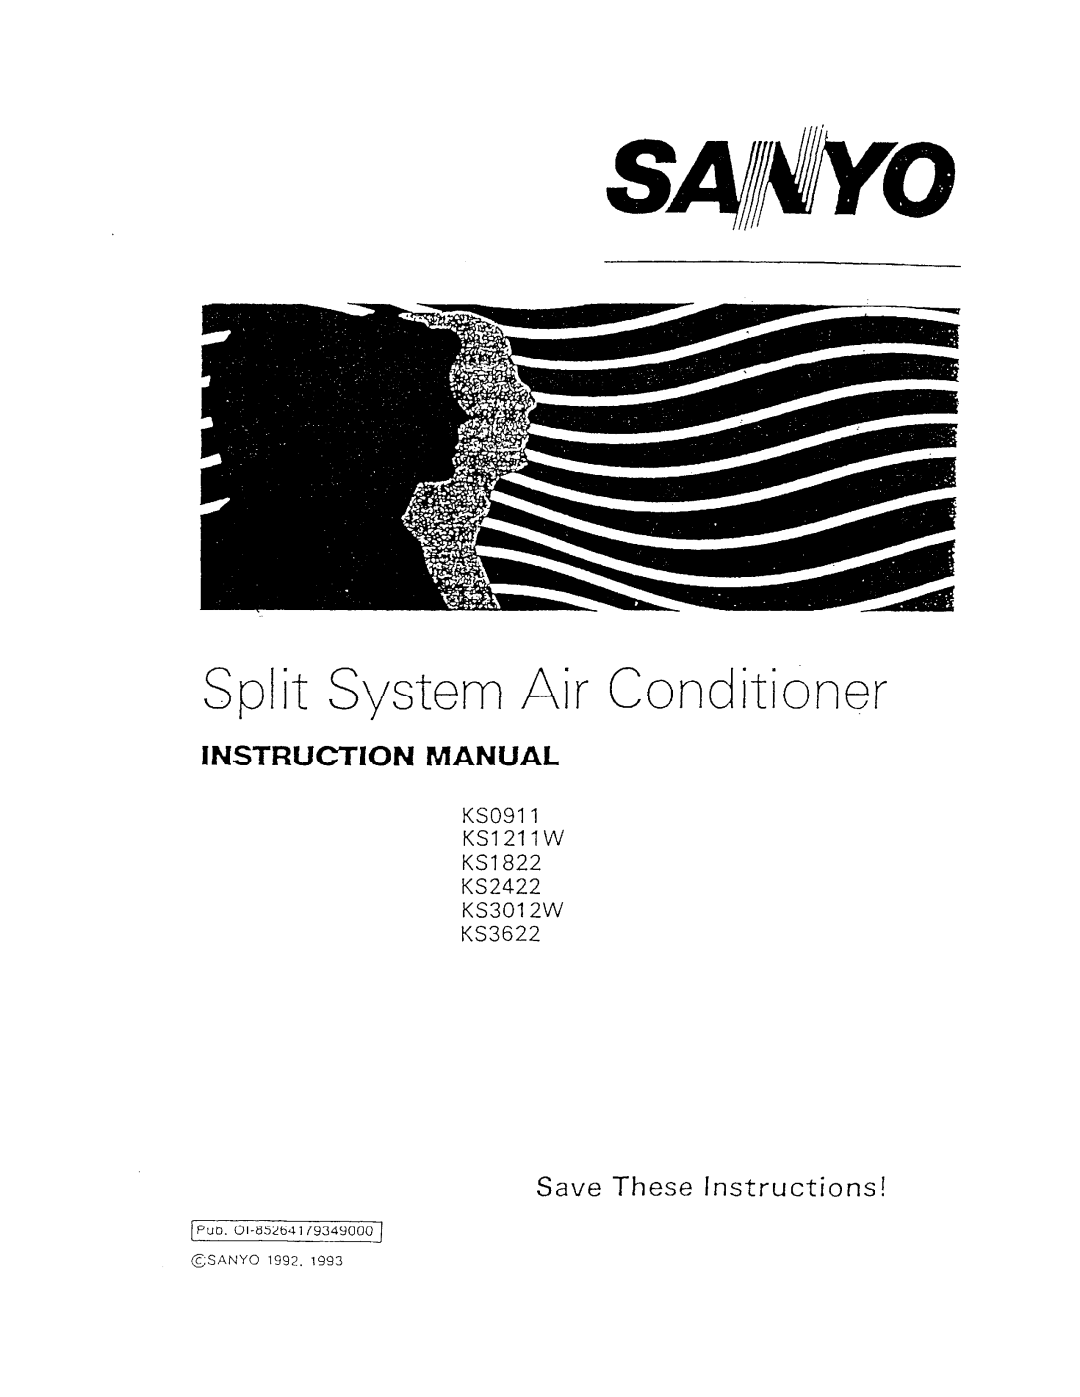 Sanyo KS0911, KS1211W, KS3622, KS2422, KS3012W manual 